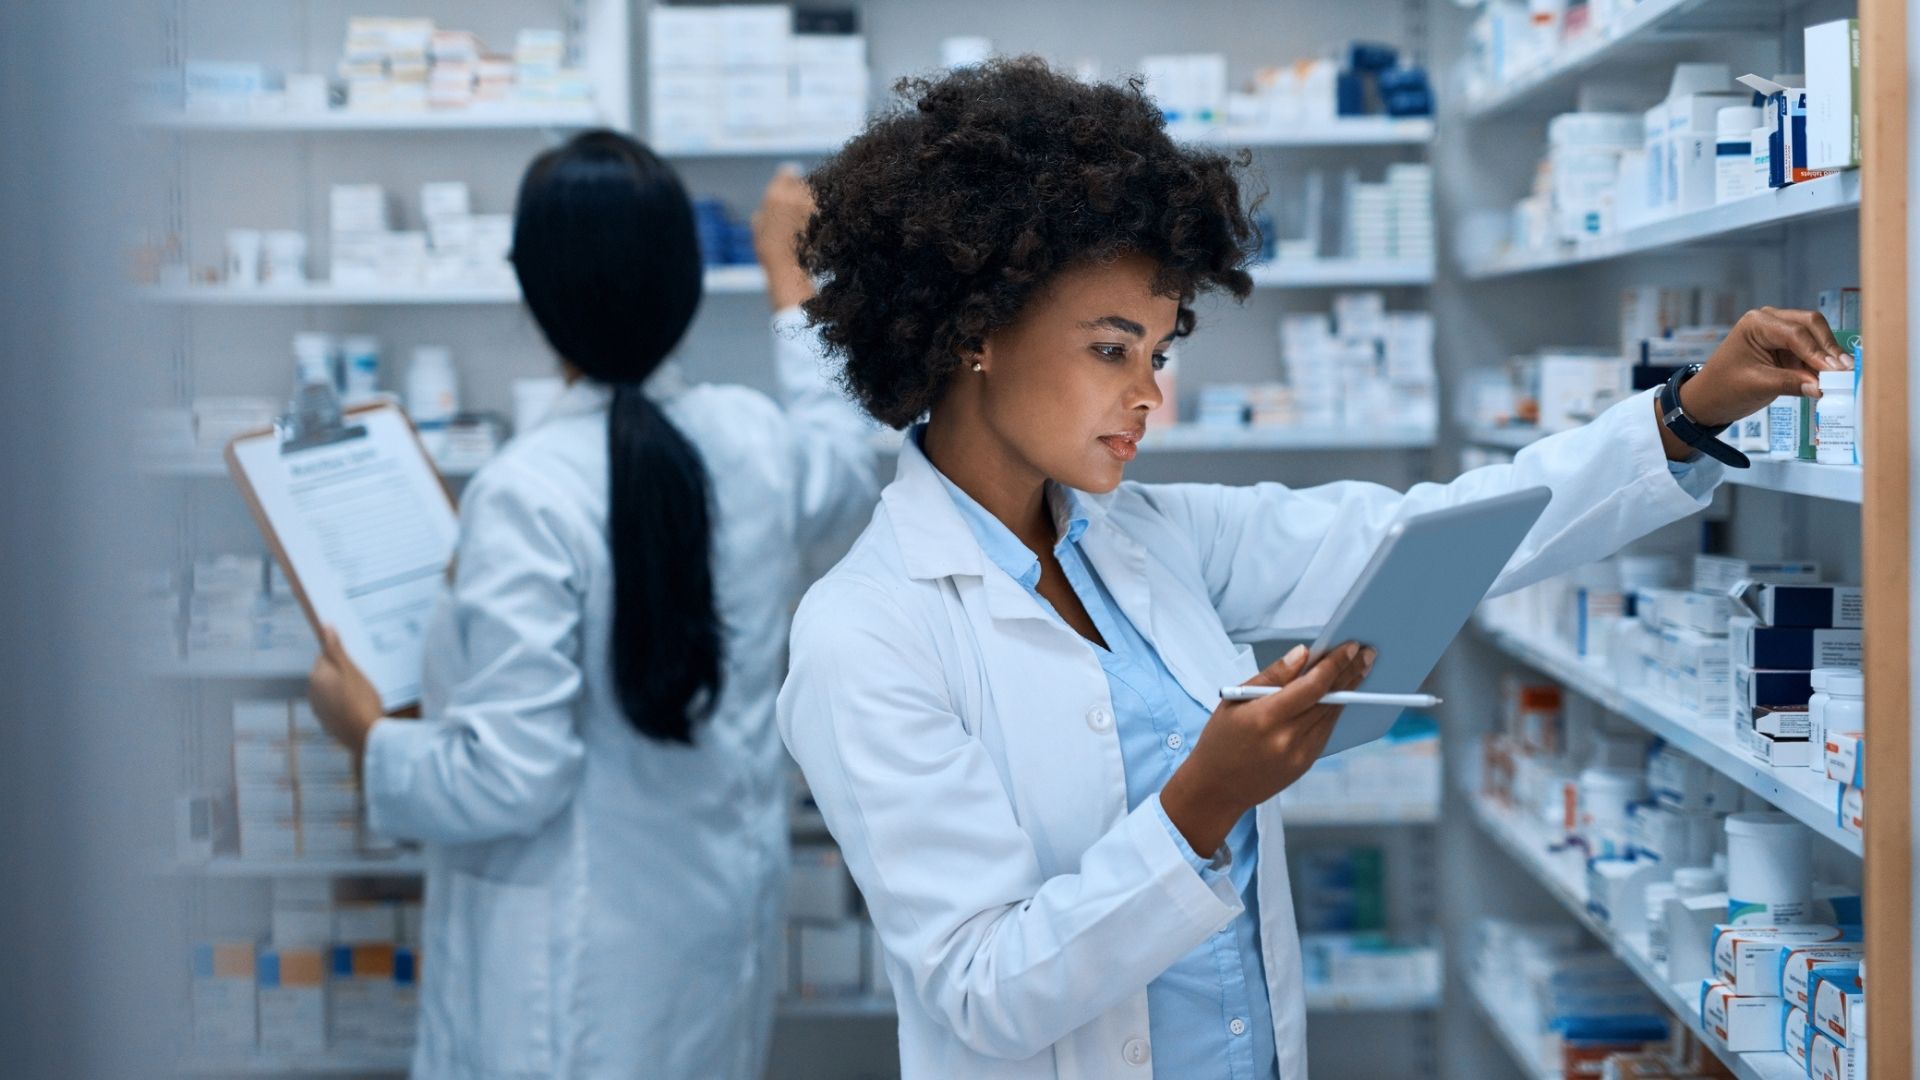 Female pharmacist grabbing medication from stock room